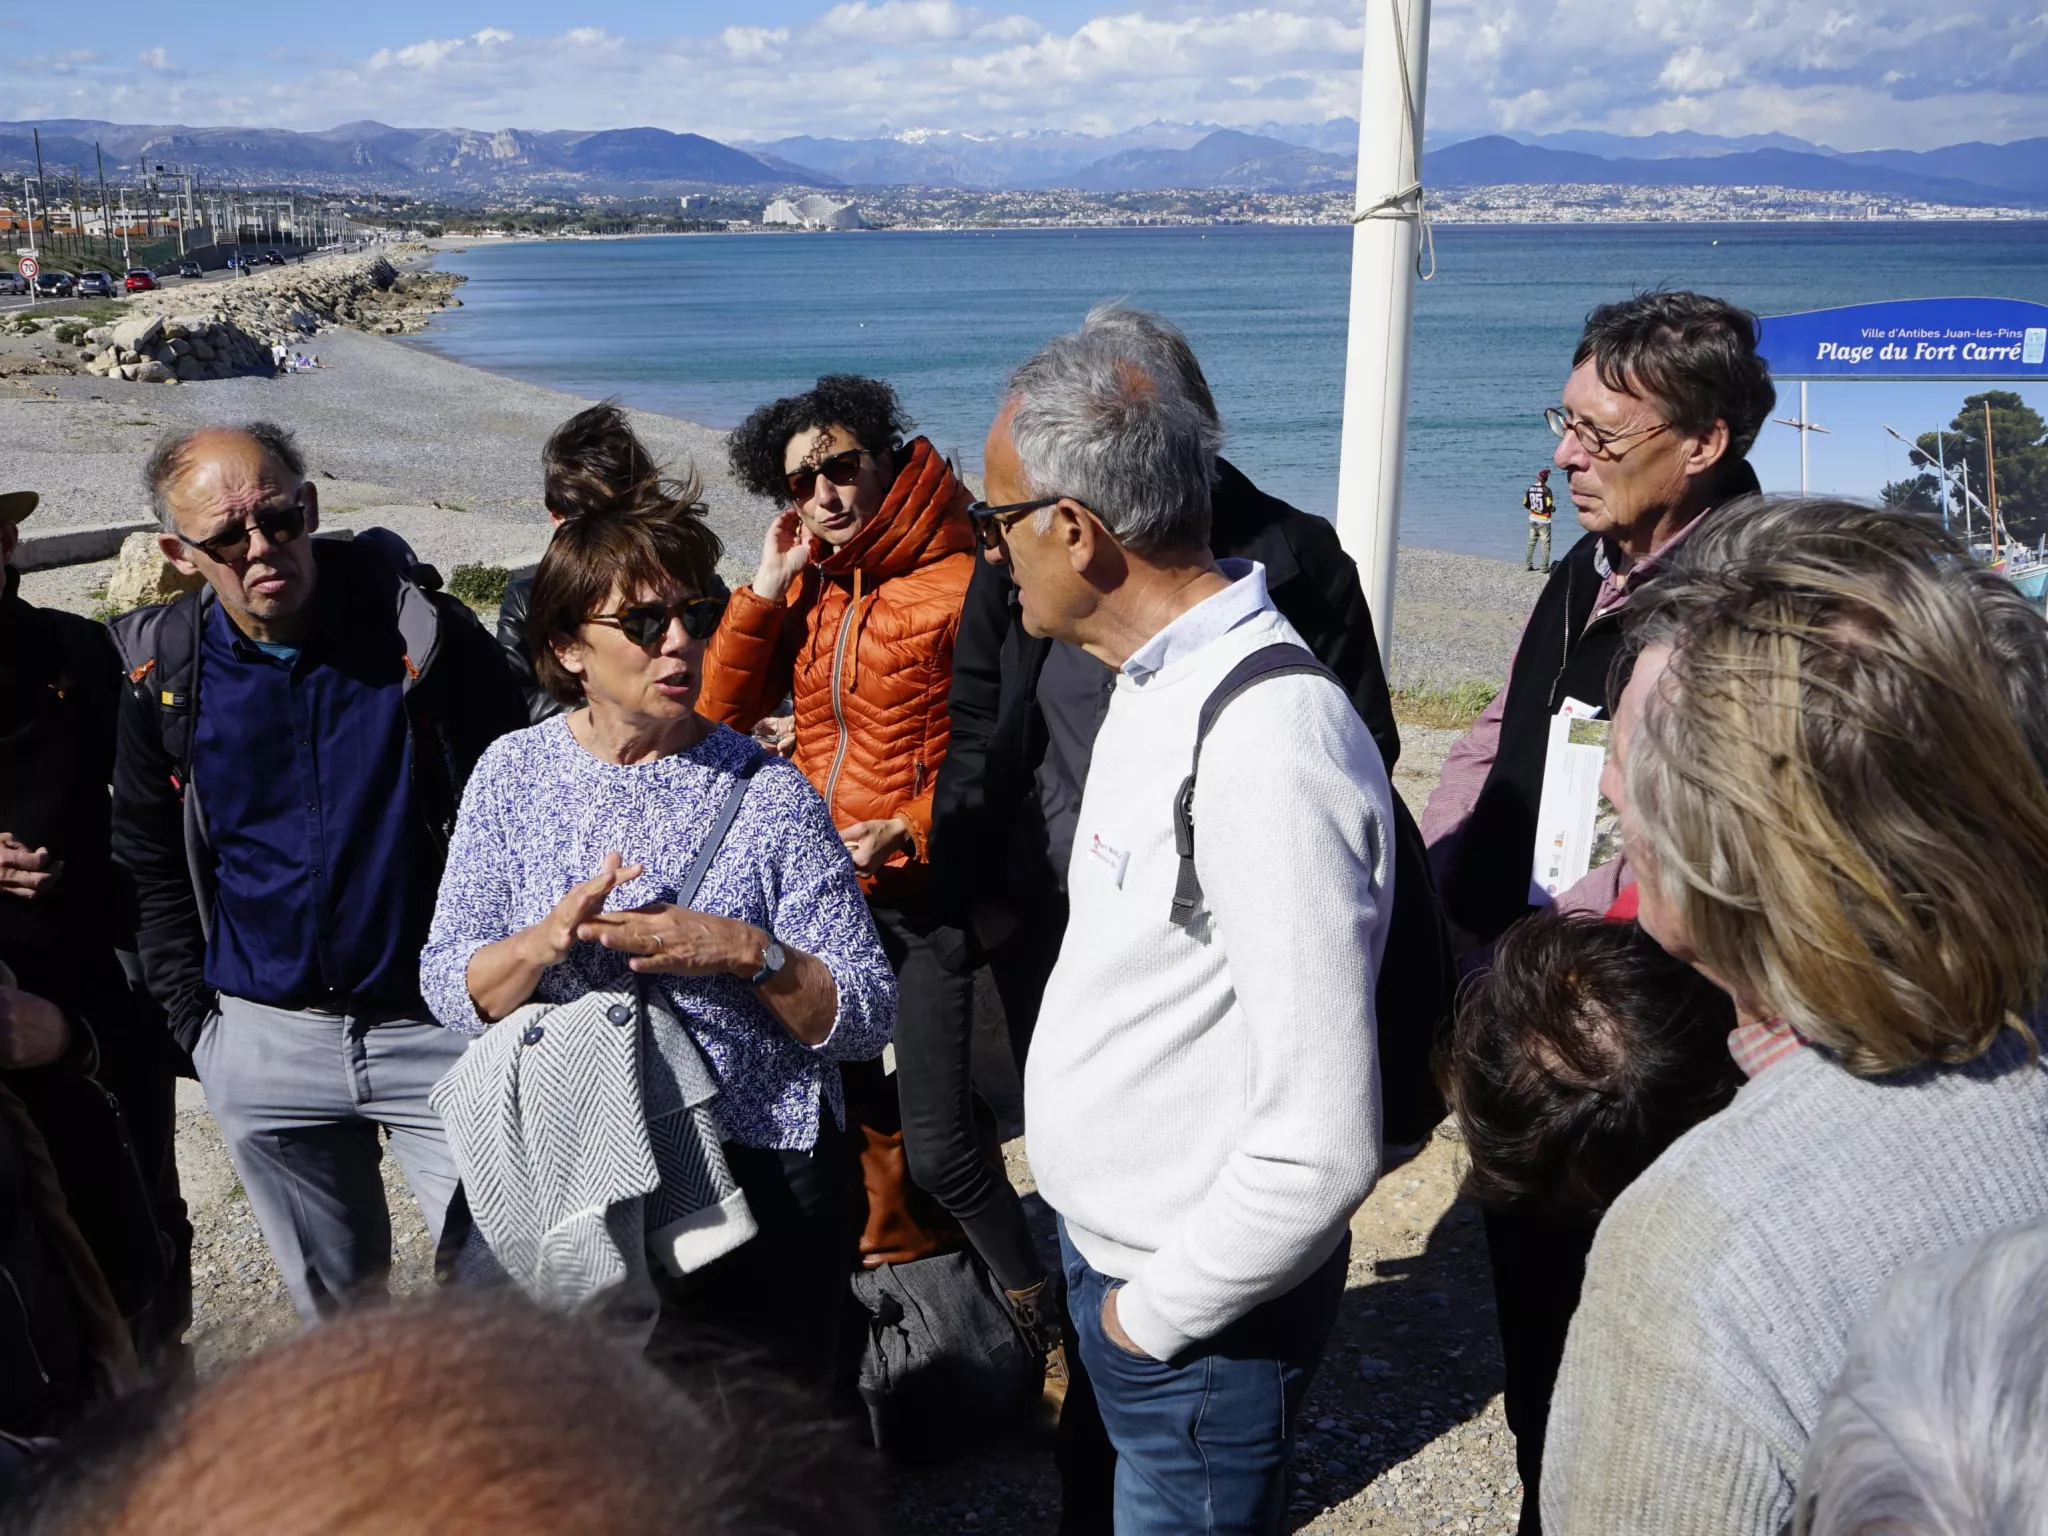 Atelier trait de côte : discussions entre participants, sur le terrain, devant la plage concernée. Site : au pied du Fort Carré à Antibes. 